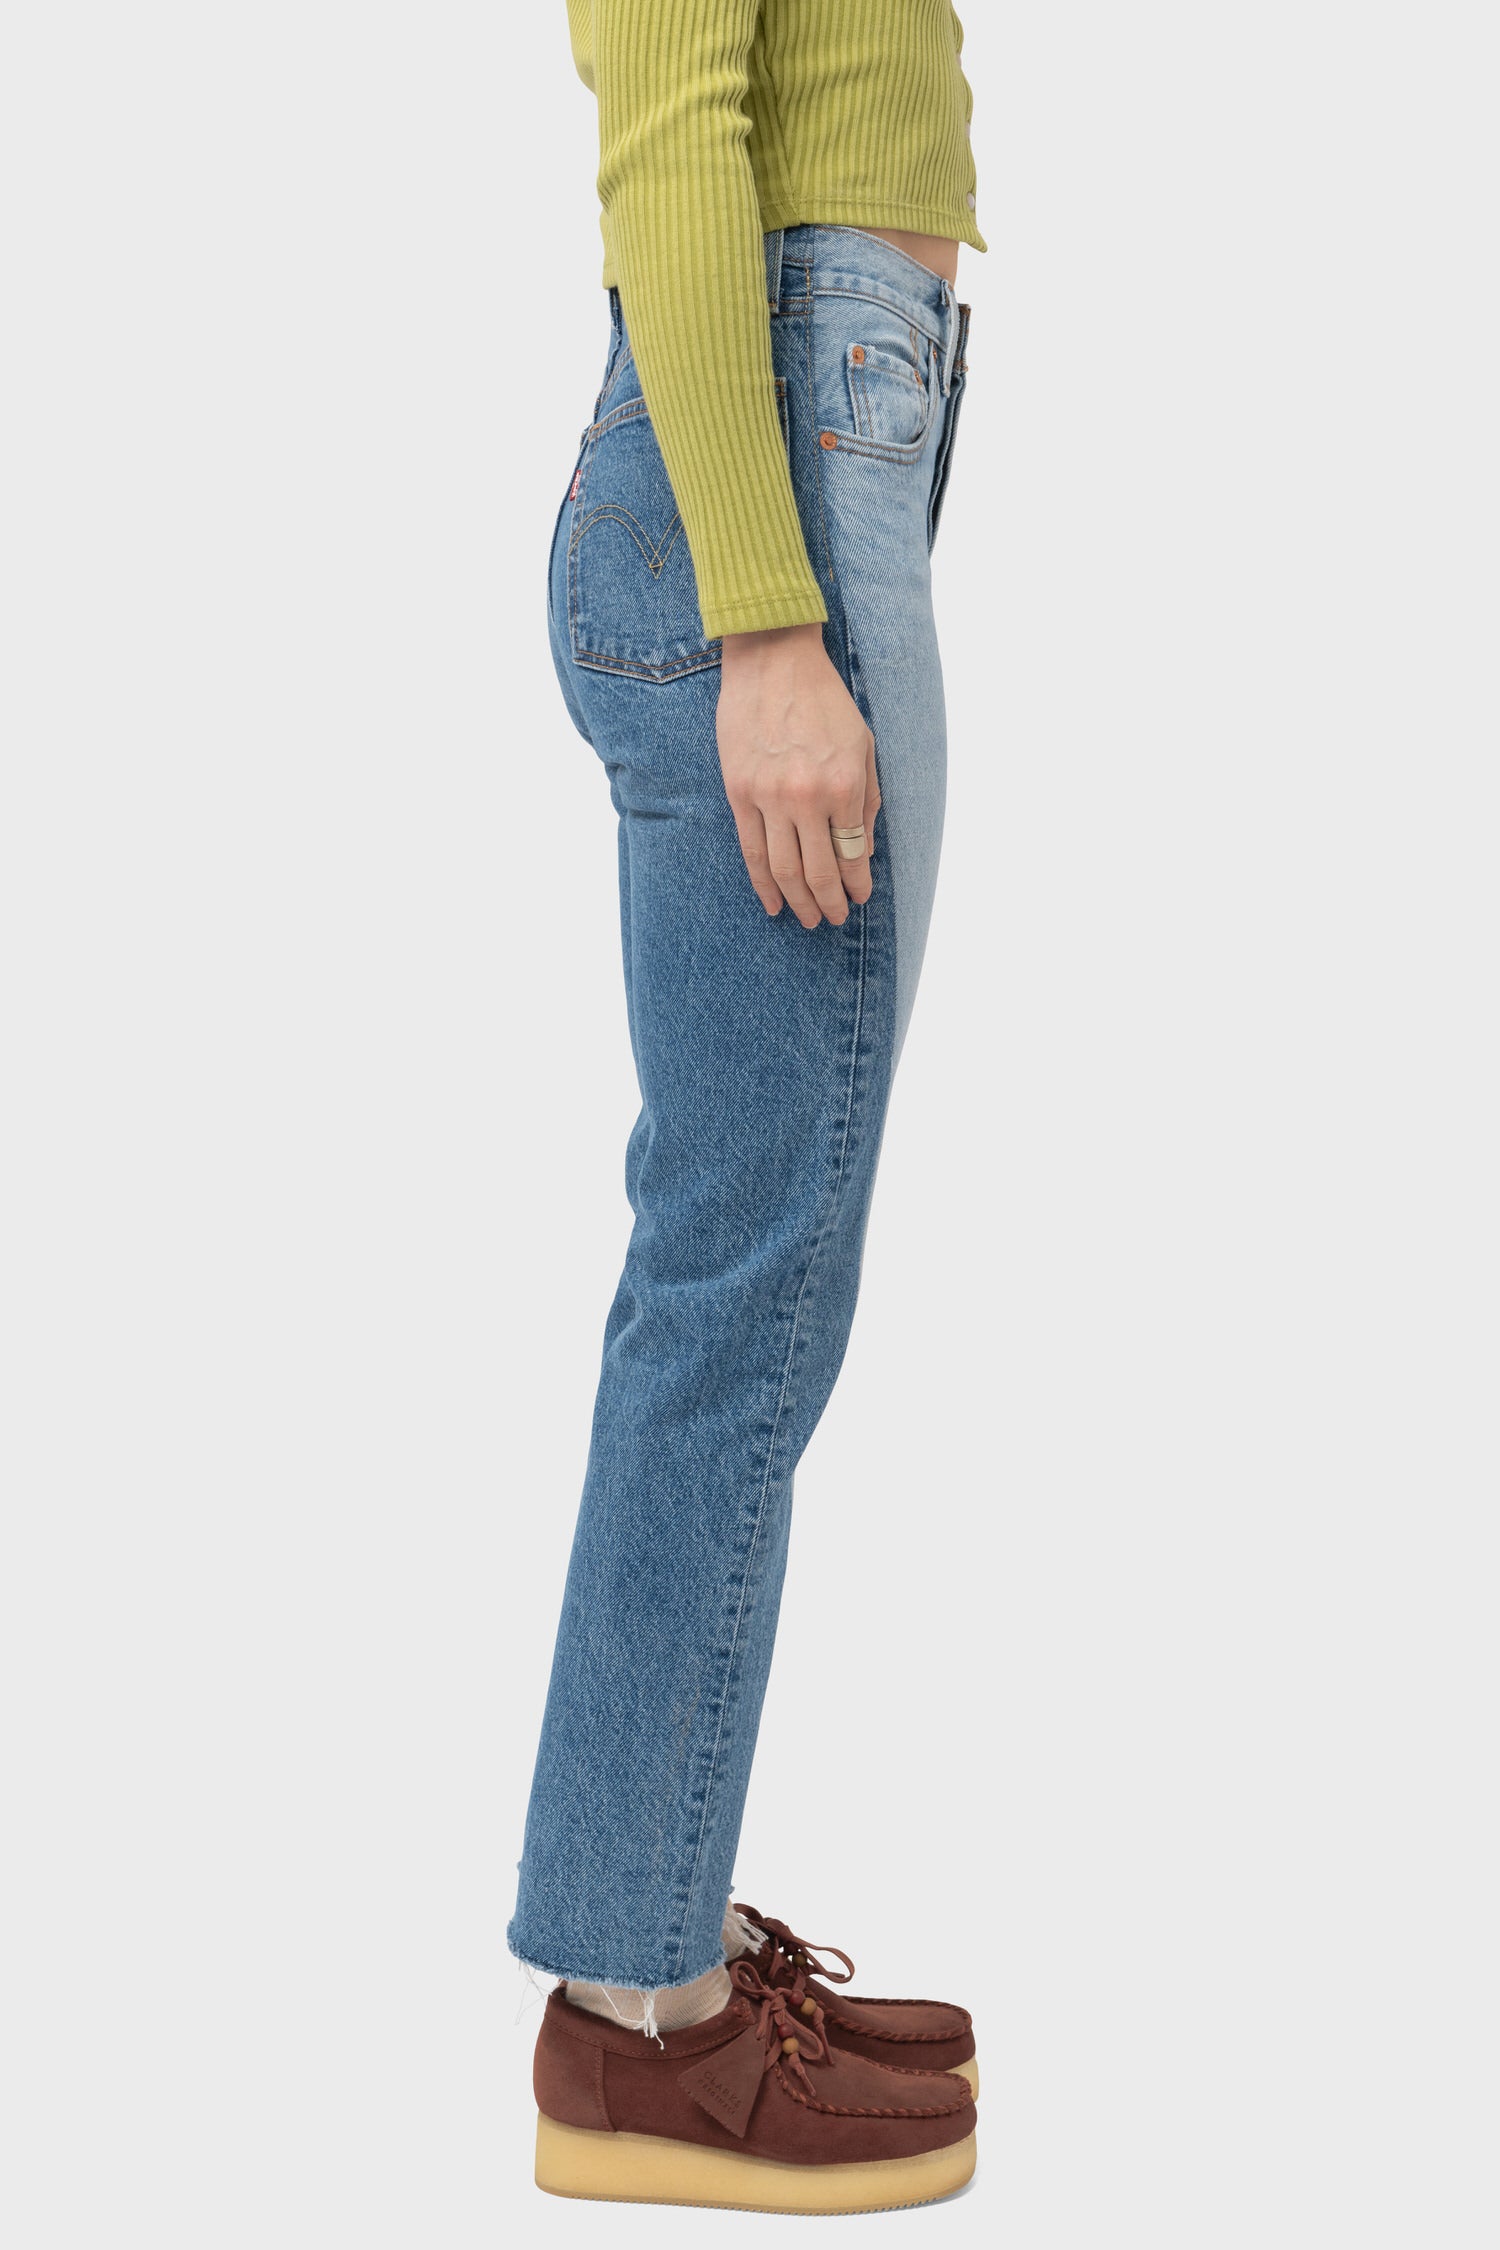 Women's Levi's 501 Jeans in Spliced Parallel Universe